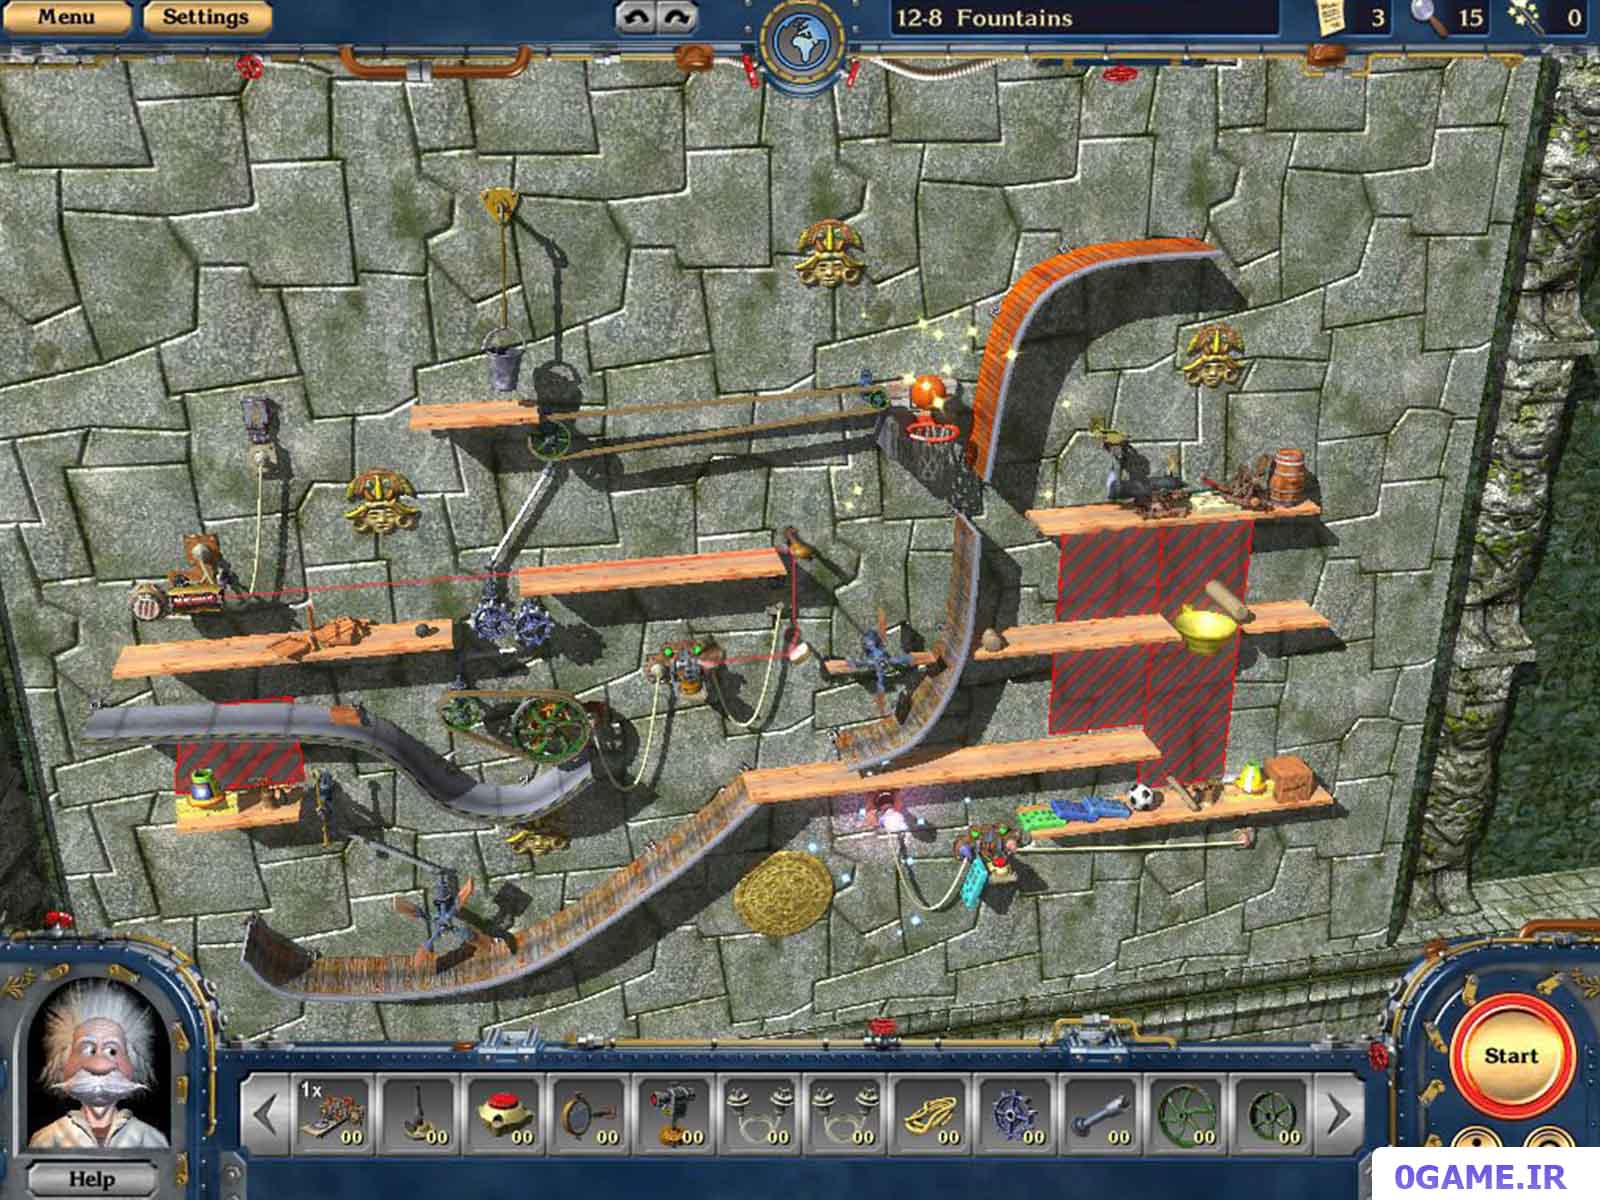 دانلود بازی ماشین های دیوانه 2 (Crazy Machines II) نسخه کامل برای کامپیوتر